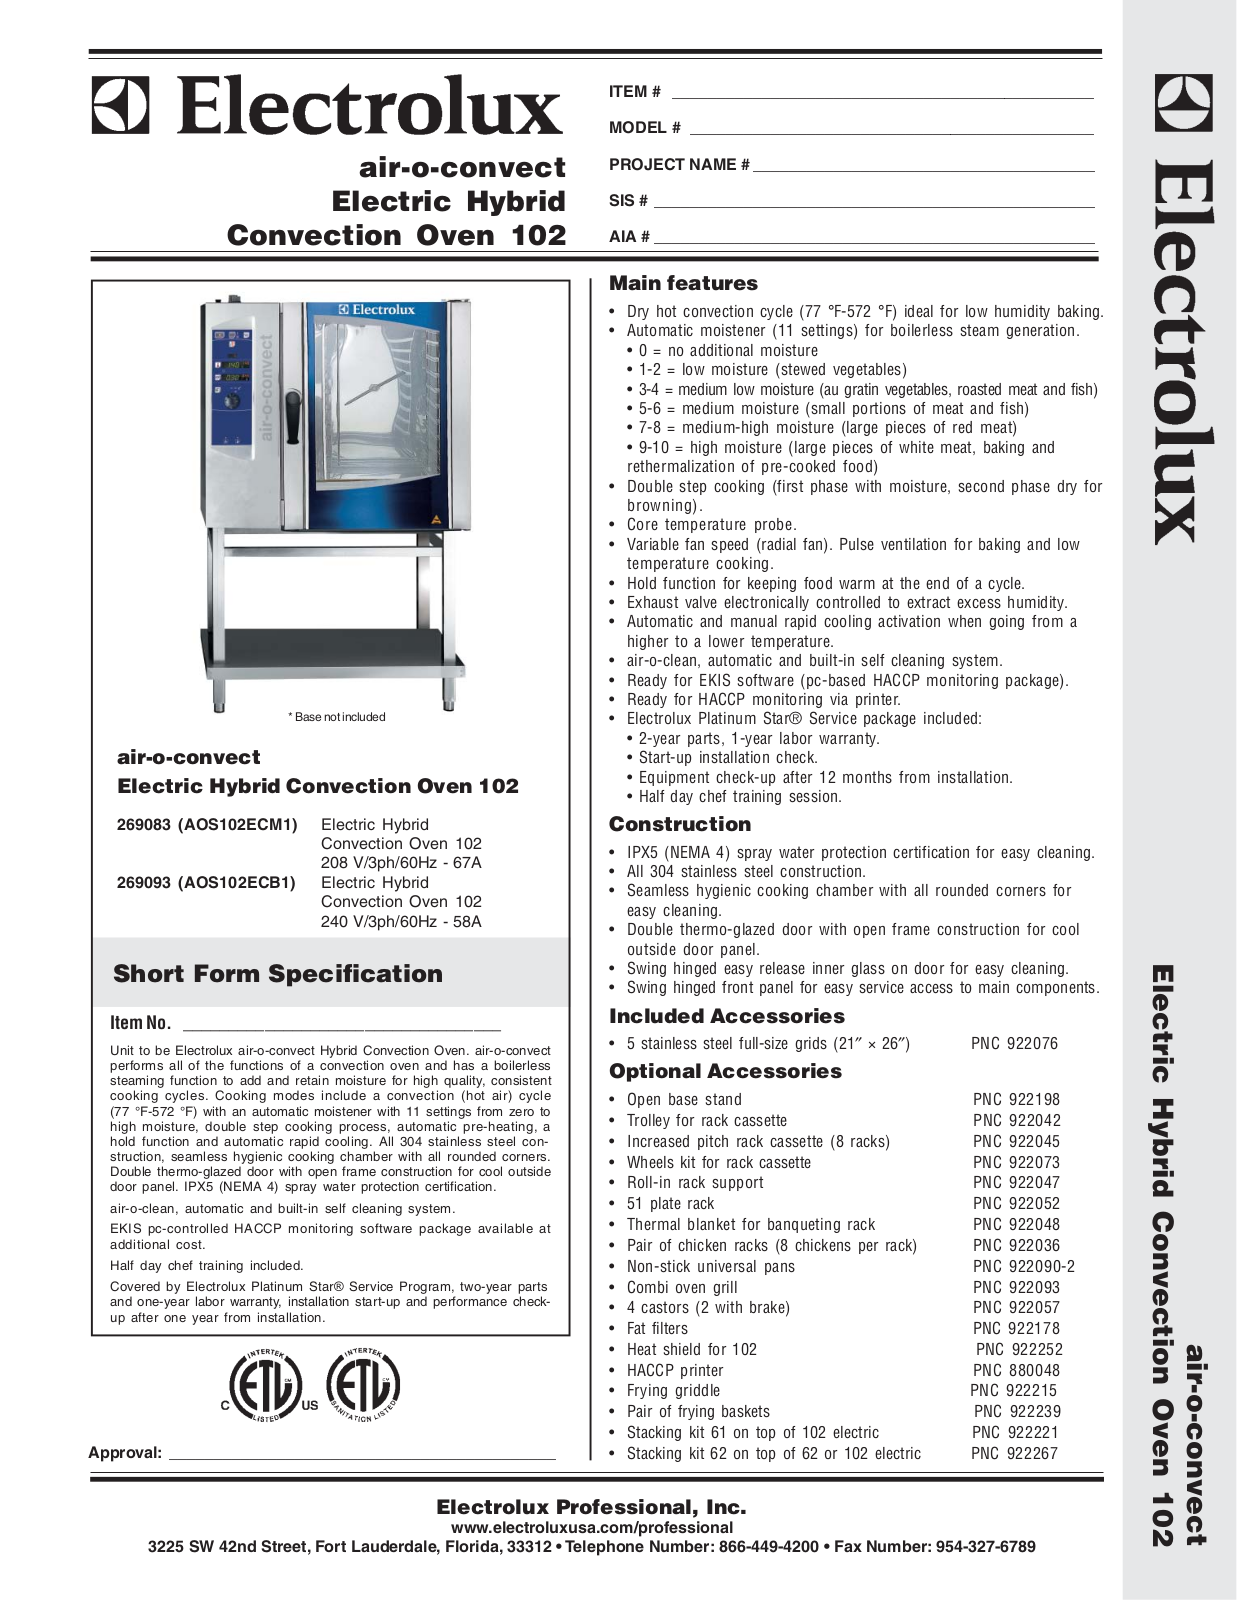 Electrolux AOS102ECB1, AOS102ECM1 User Manual